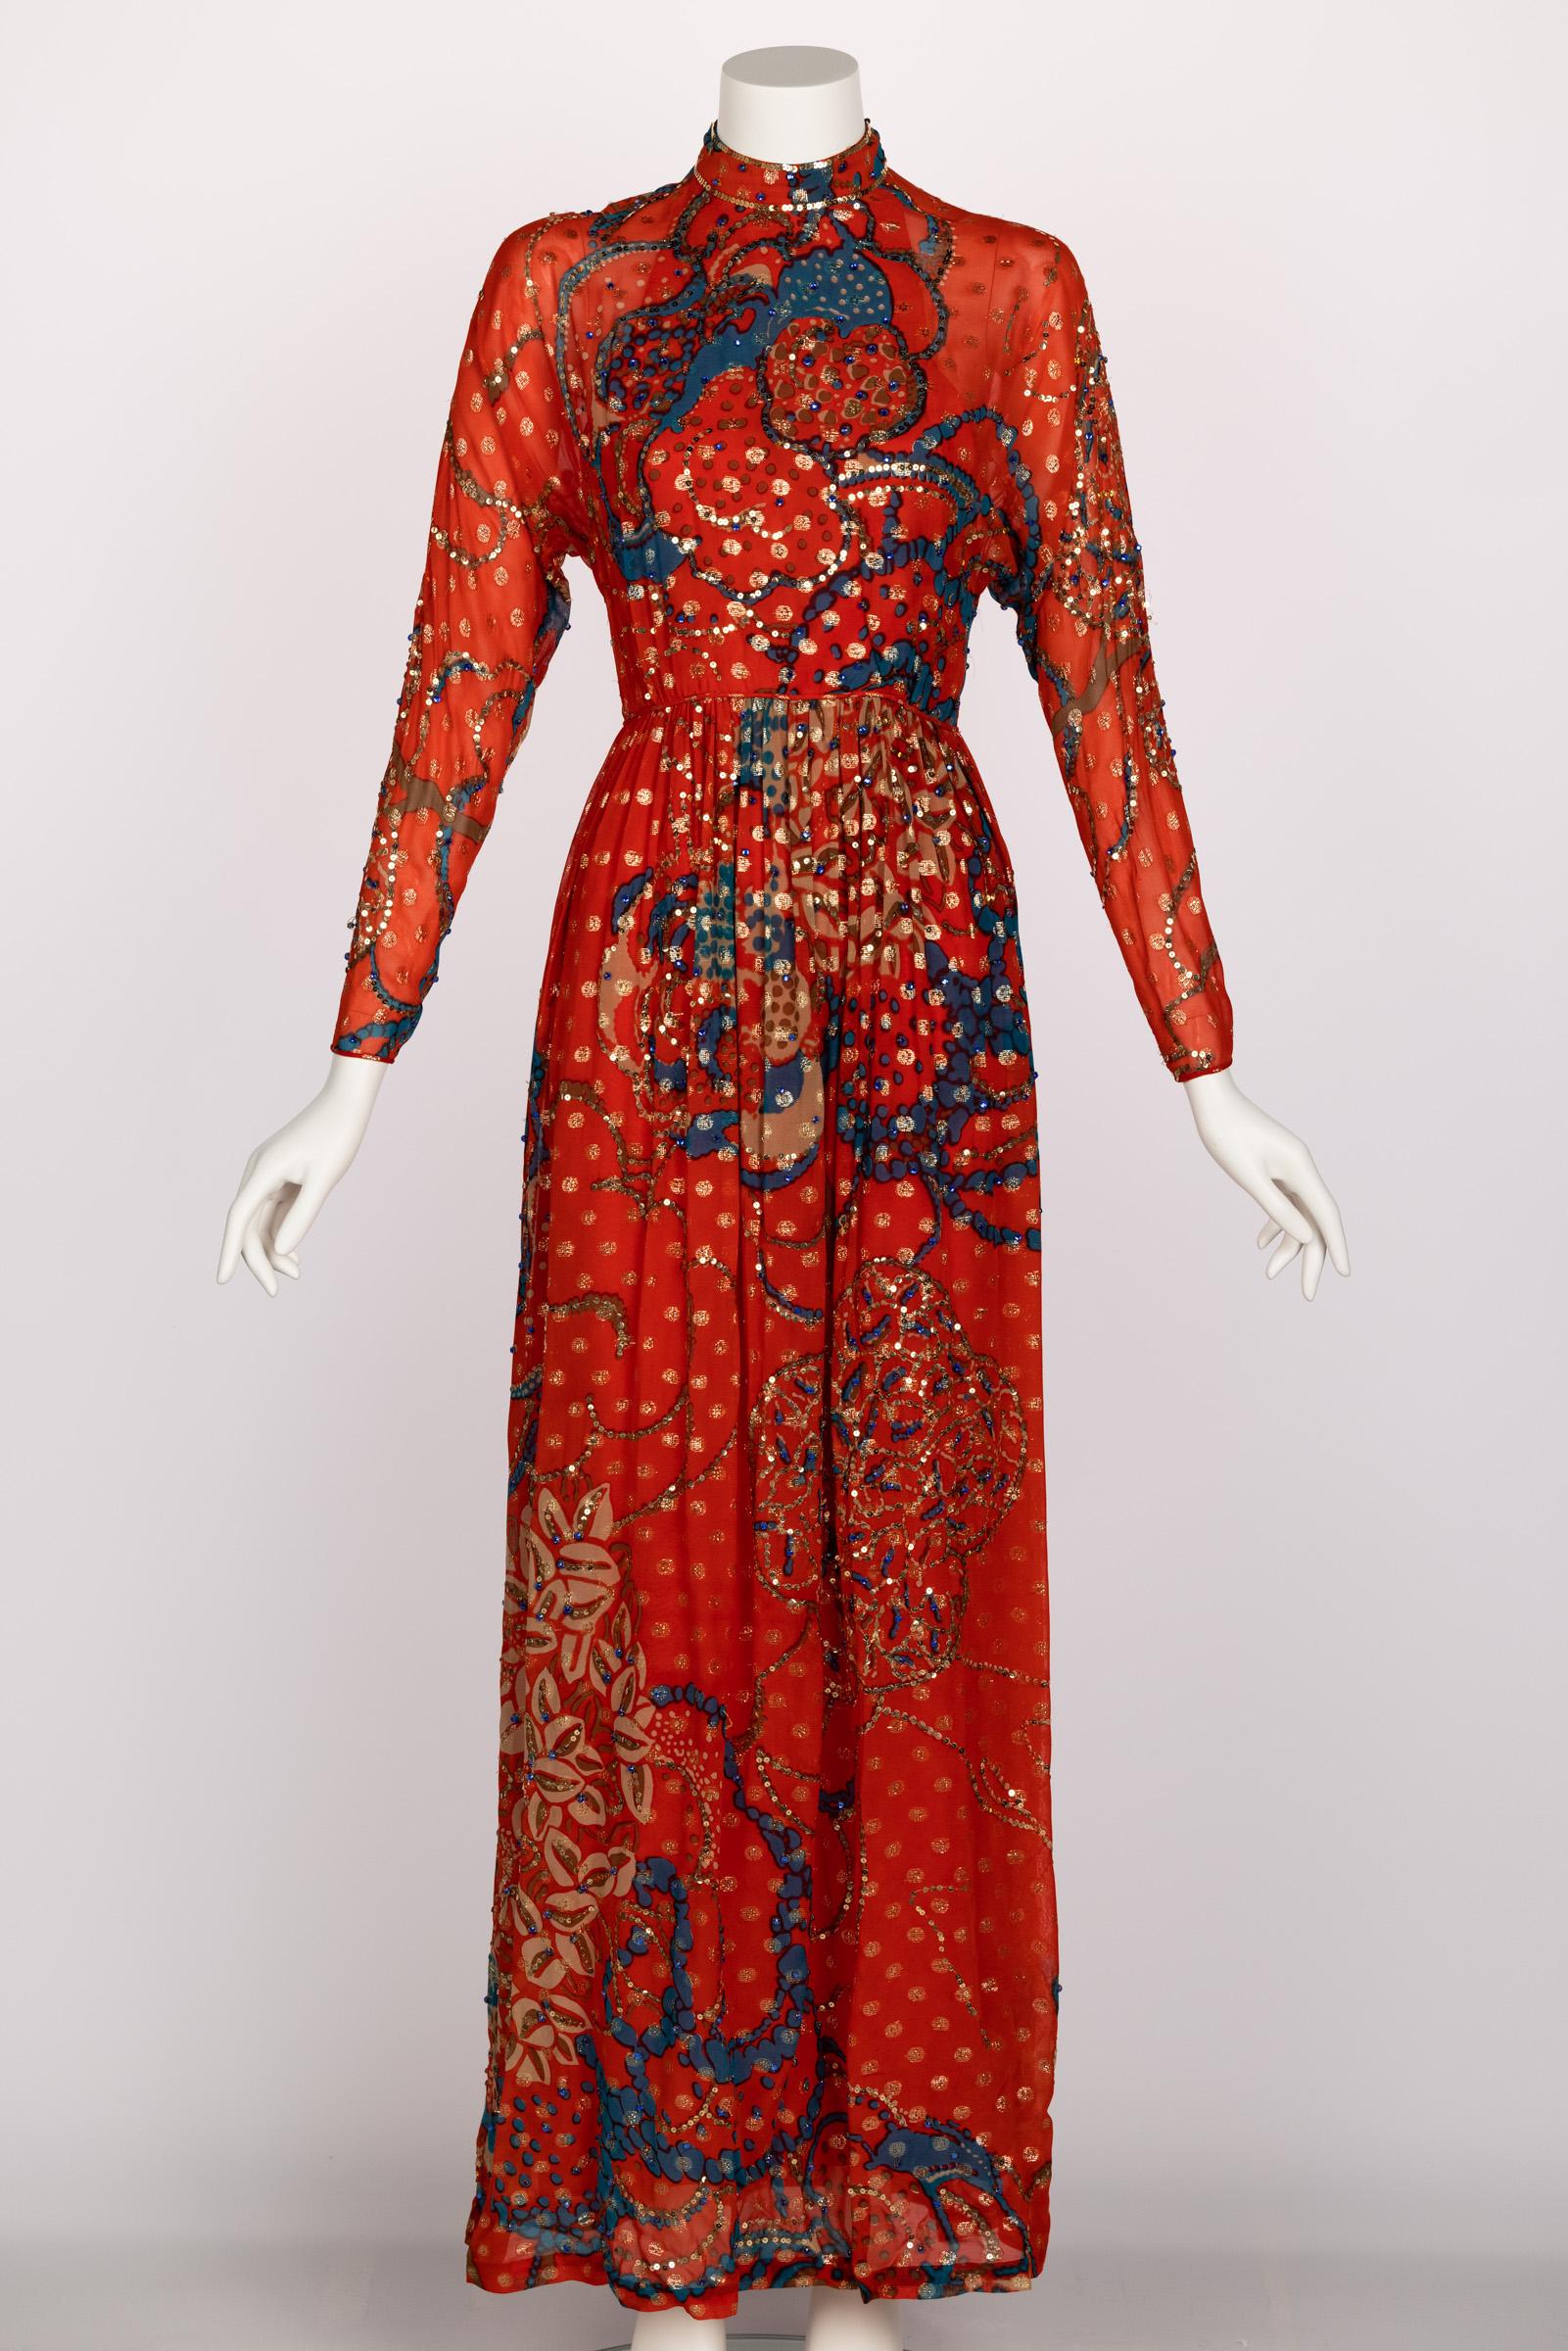 Der amerikanische Designer Malcolm Starr machte sich in den späten 1960er und 1970er Jahren einen Namen, indem er elegante Kleider entwarf, die eine berauschende Mischung aus sittsamer Weiblichkeit und souveräner Mode darstellten. Der in Ägypten